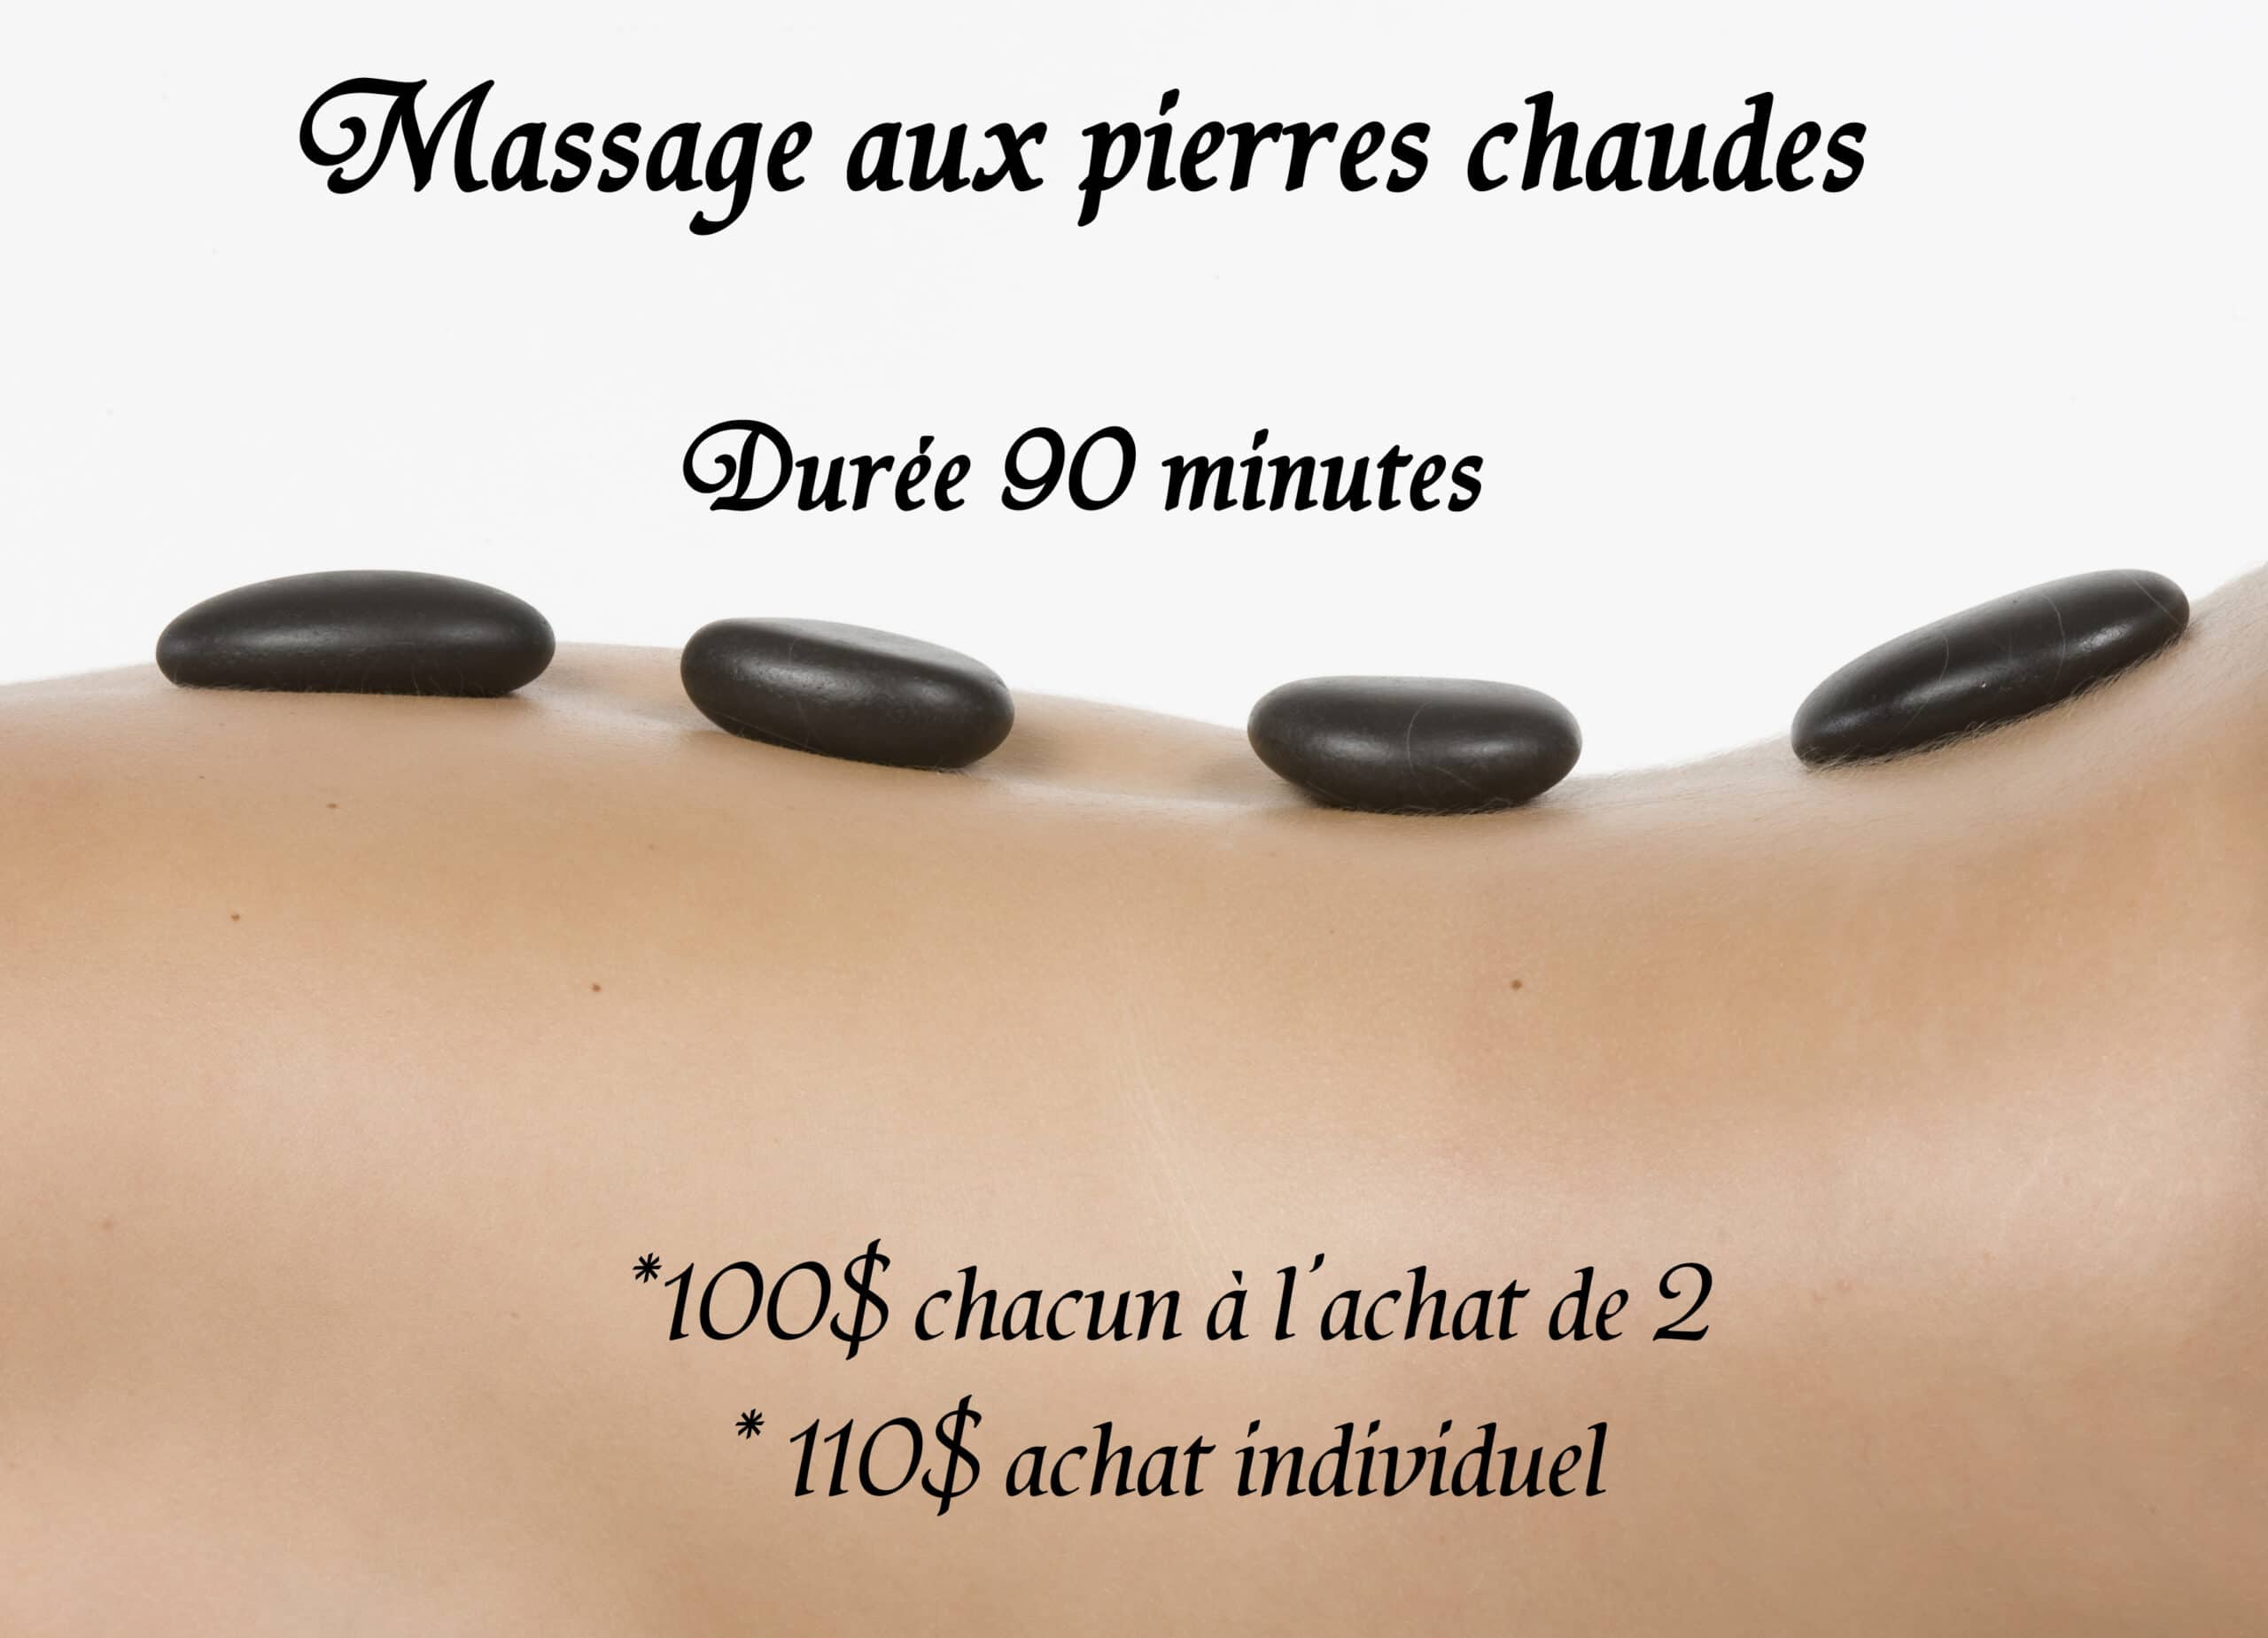 Massage aux pierres chaudes, durée 90 minutes, *100$ chacun à l'achat de 2, *110$ achat individuel